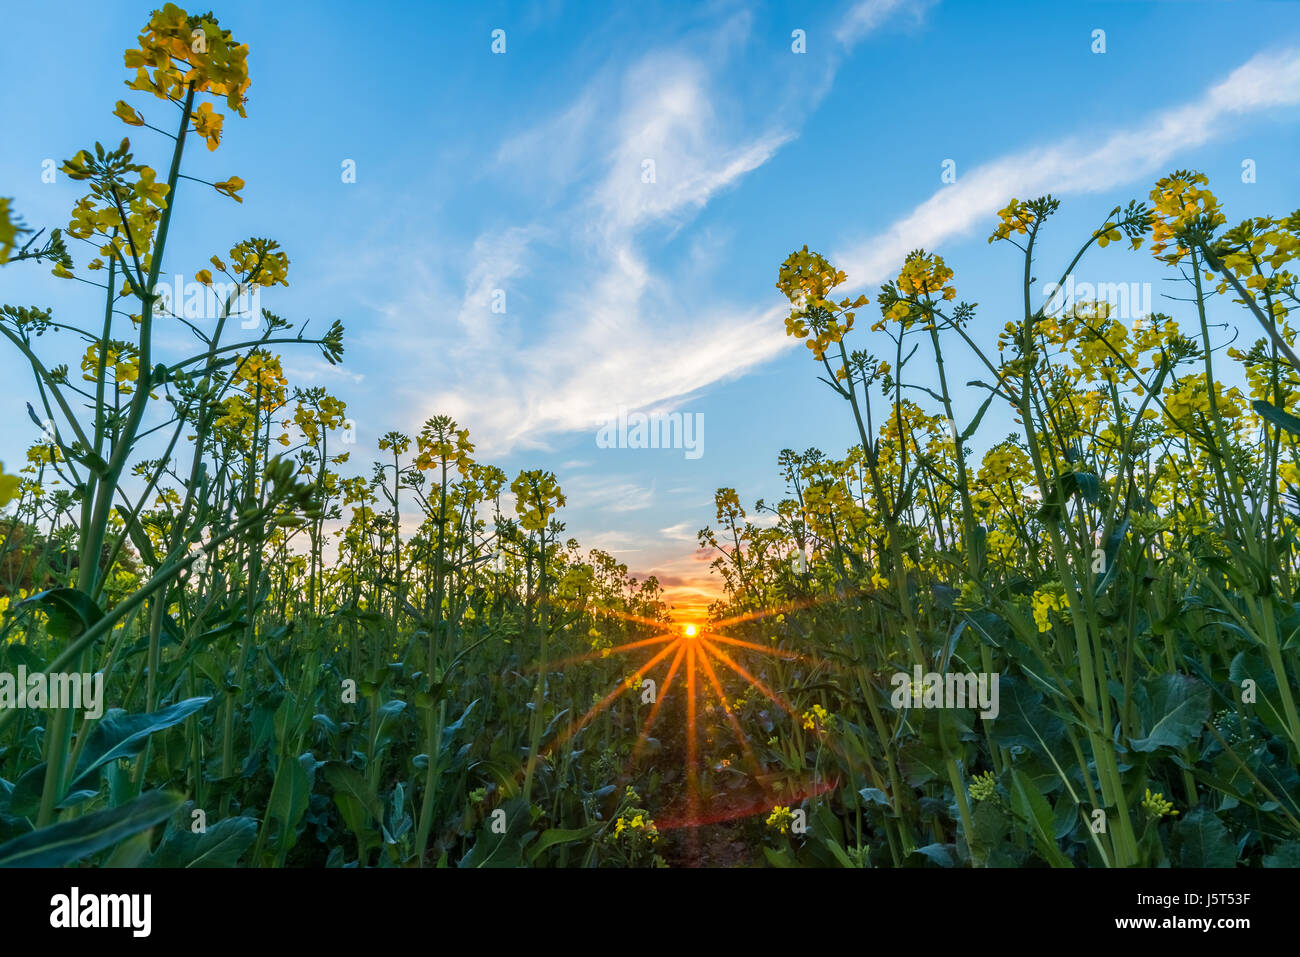 Horizontale Frühling Landschaftsfoto. Niedrige Sicht aus Raps Feld mit gelben Blüten und grünen Pflanzen. Sonnenuntergang mit orange Sonnenstrahlen im Hintergrund. N Stockfoto